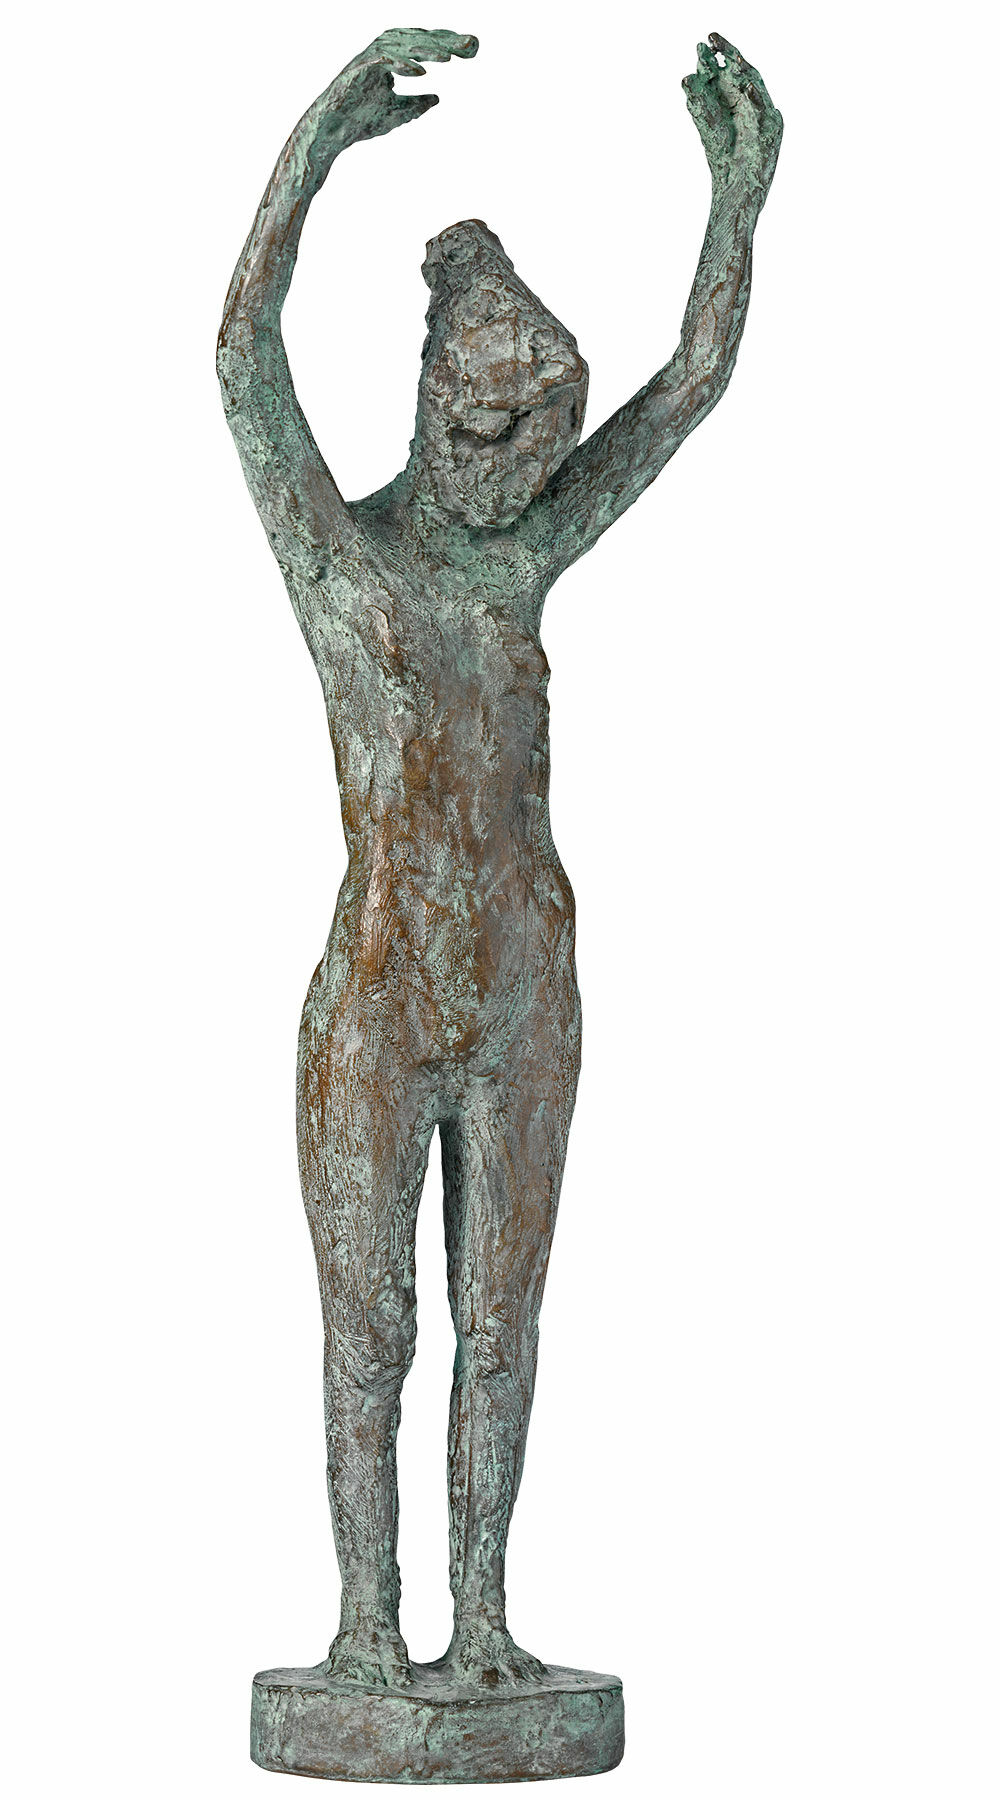 Skulptur "Dancer" (2019), bronze von Thomas Jastram